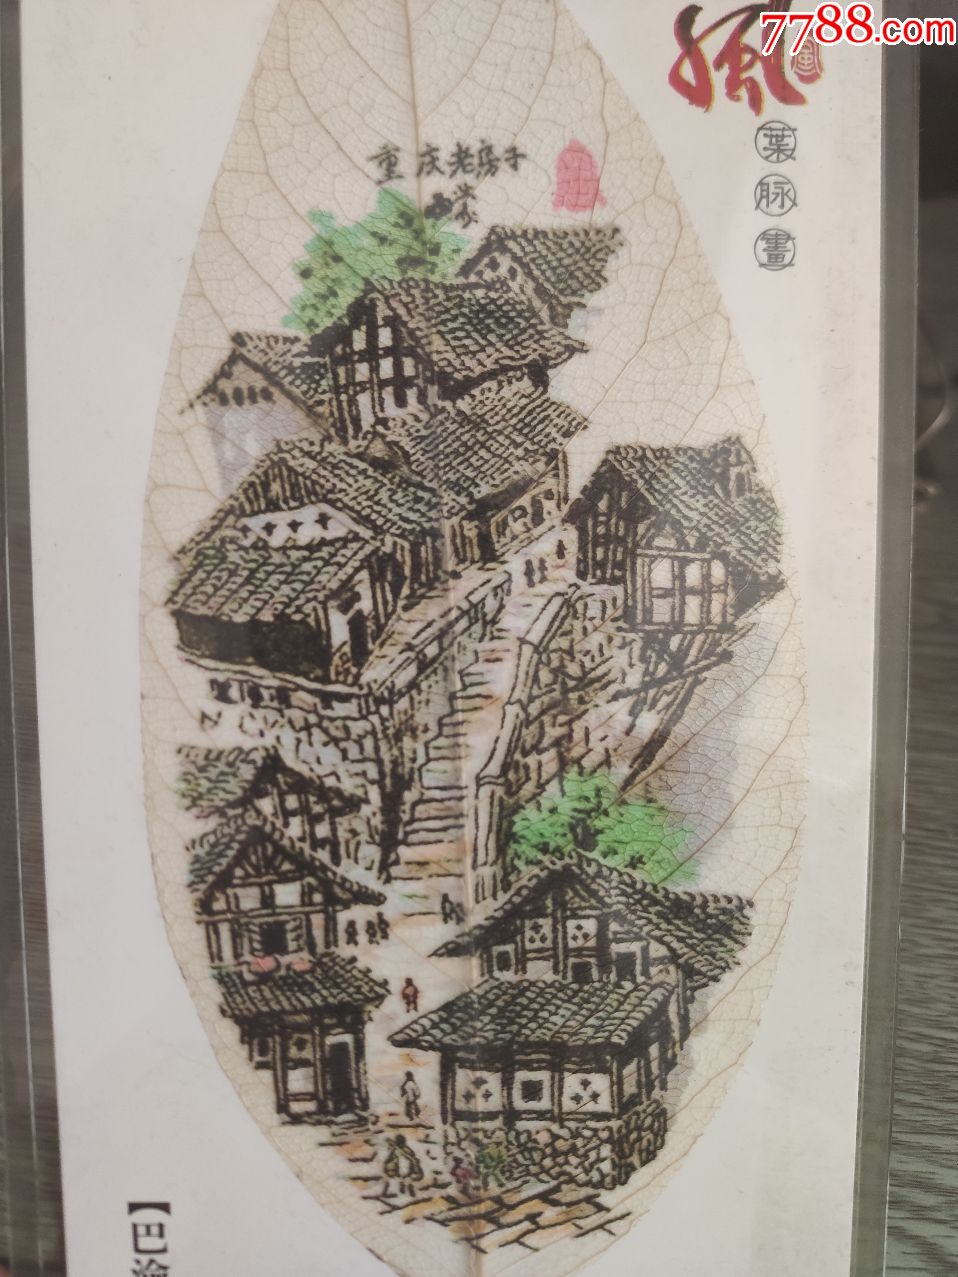 已经绝版重庆山城吊脚楼叶脉画,2010上海世博会选定贵宾礼品长25宽11.